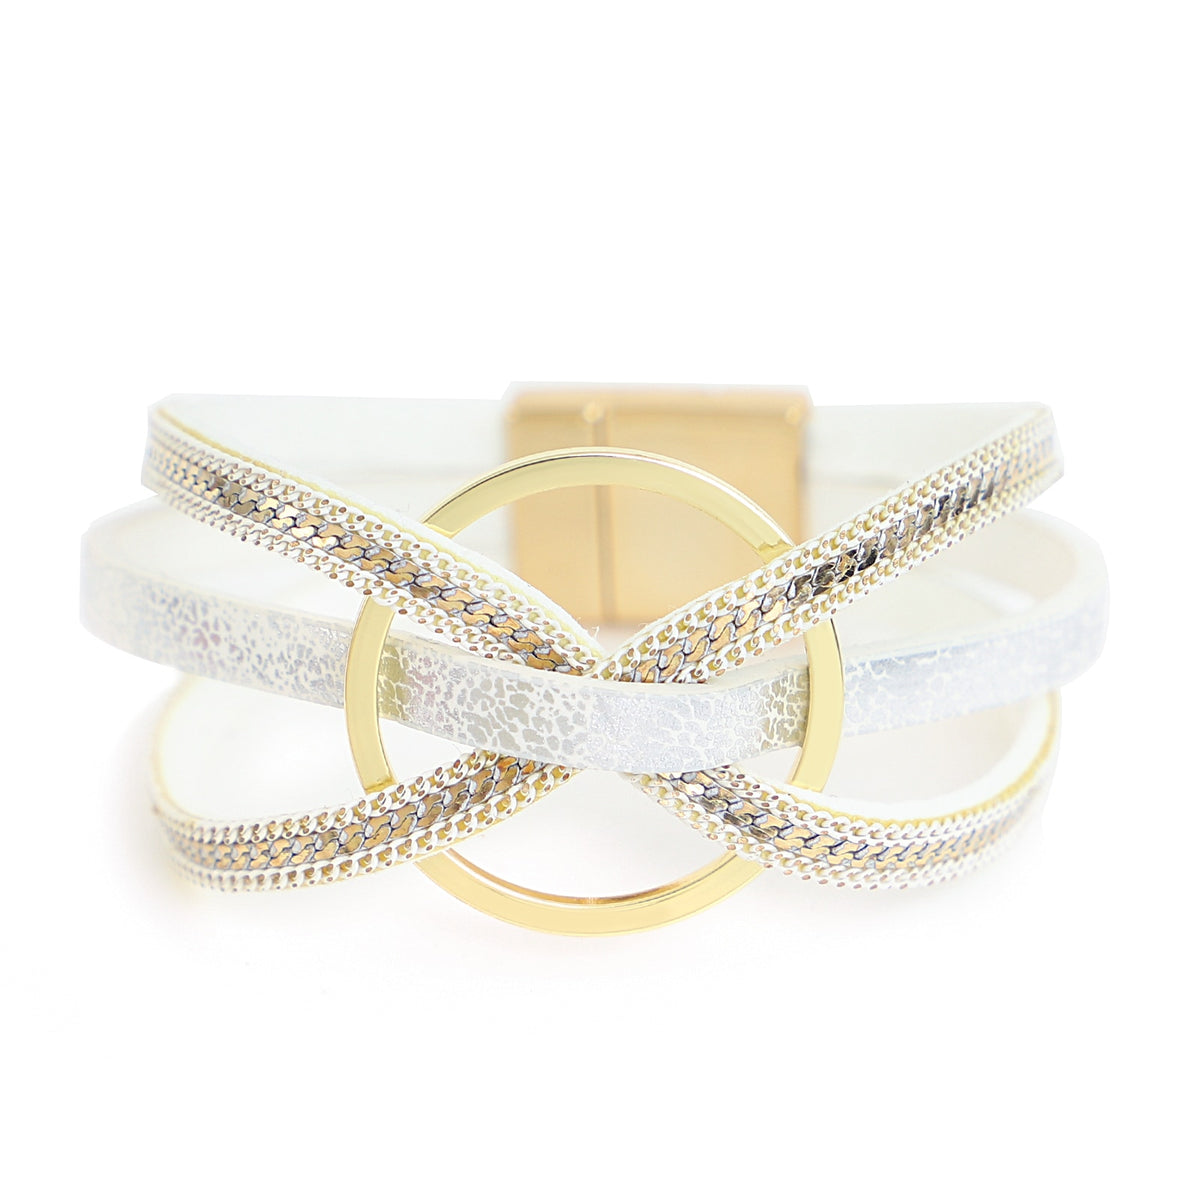 Jewellery - Cross Twist Leather Bracelets